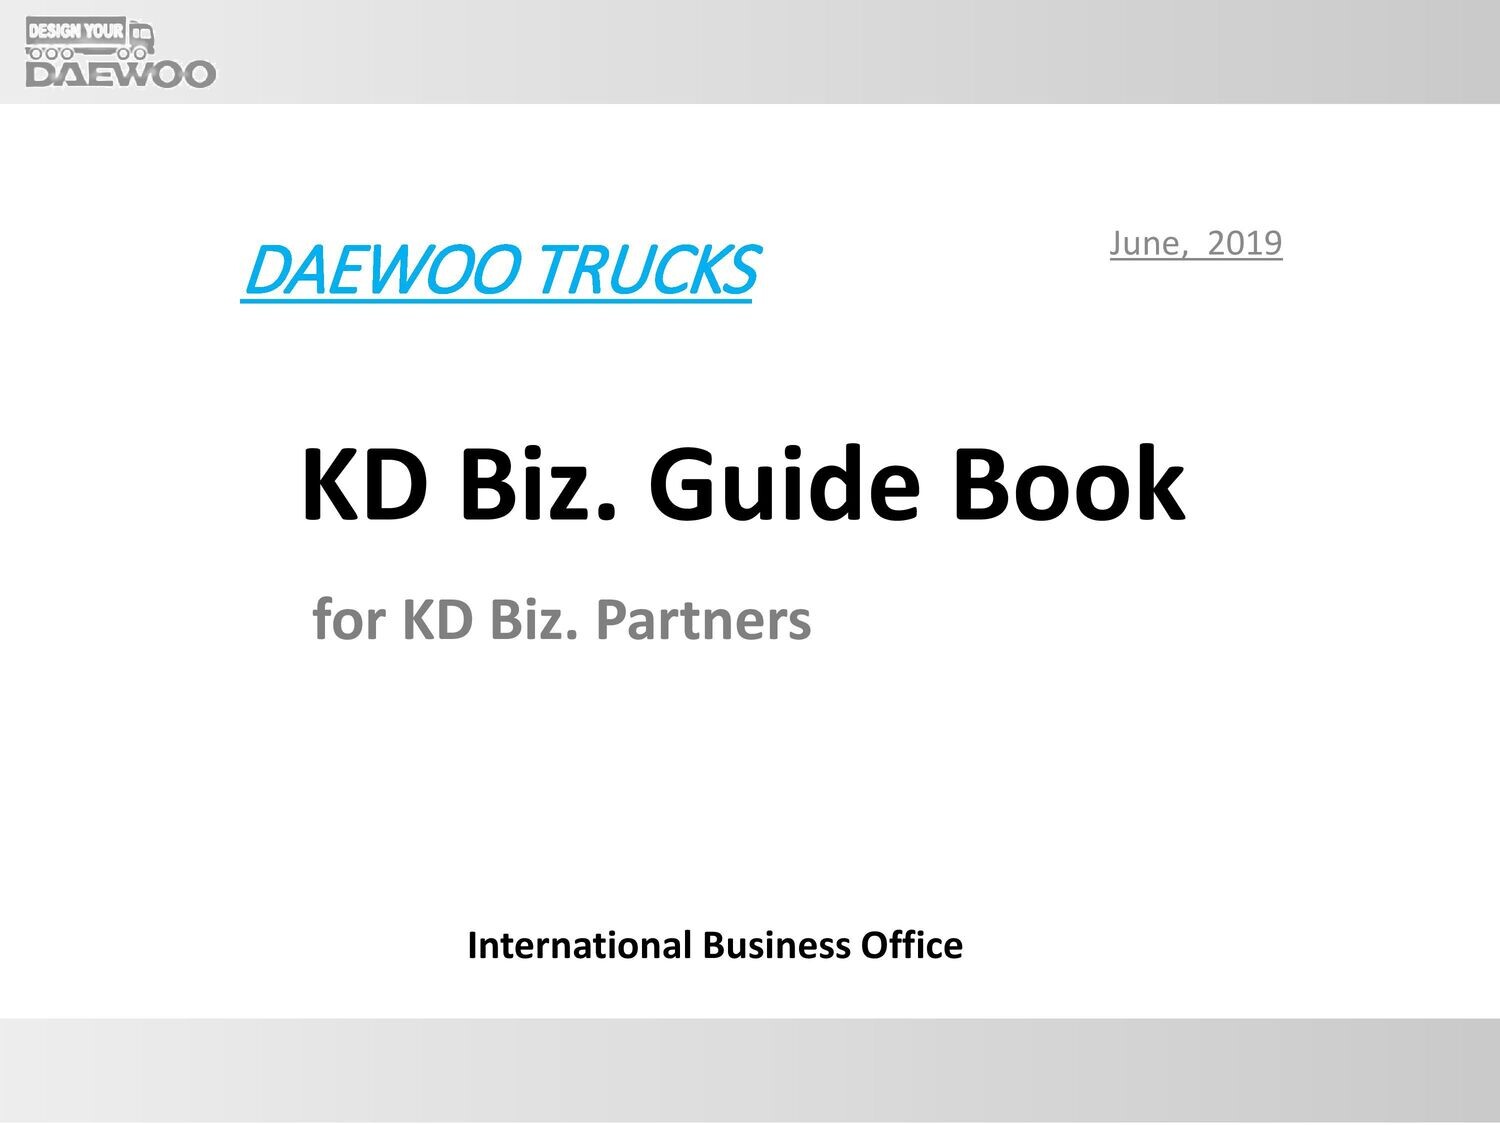 Daewoo truck KD Biz Guide Book